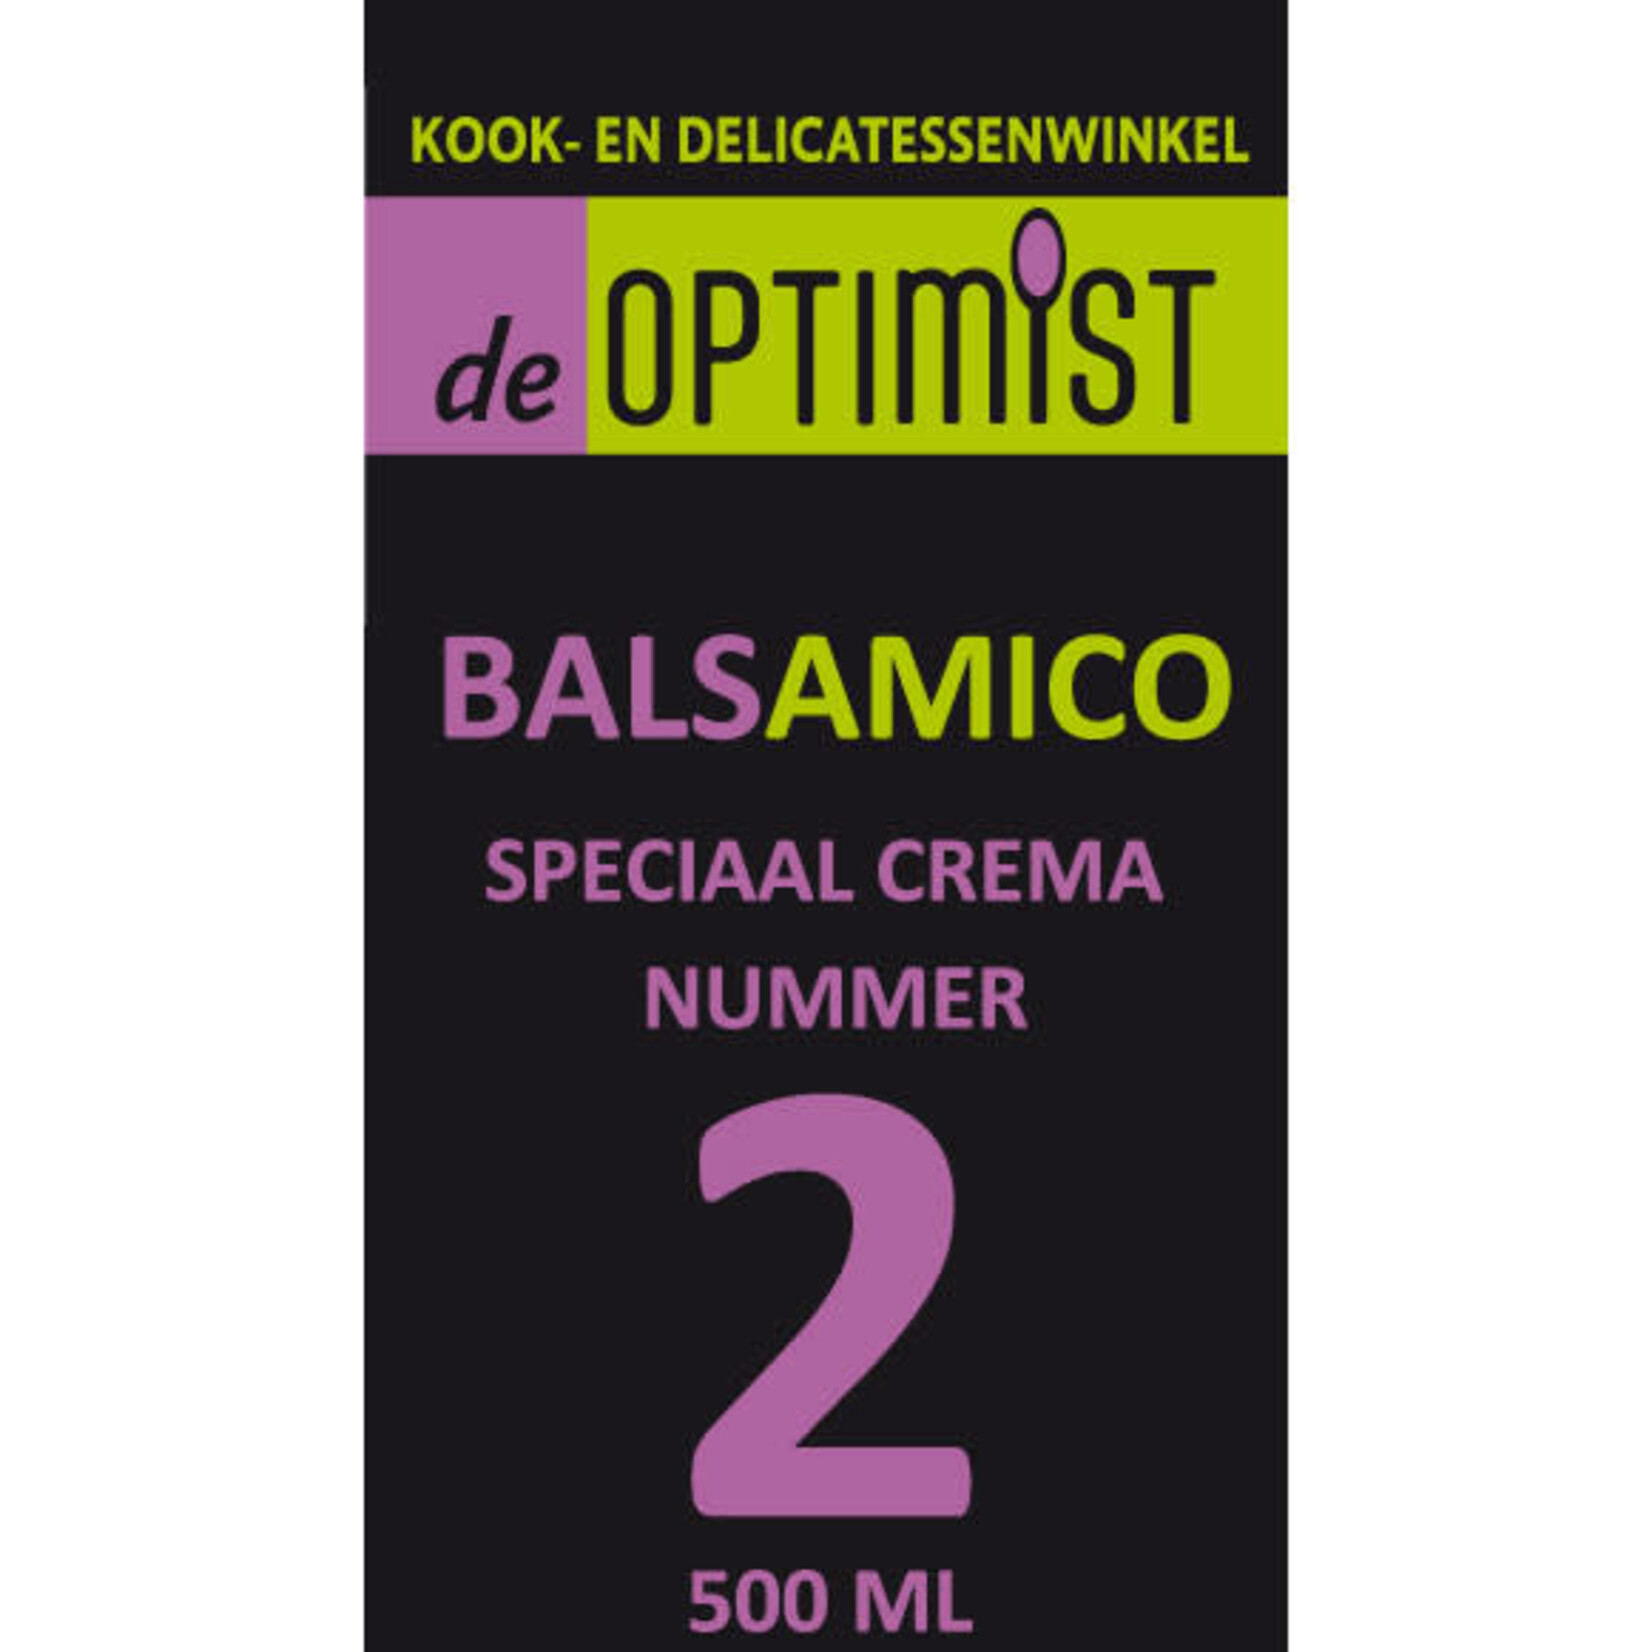 DE OPTIMIST DE OPTIMIST BALSAMICO NUMMER 2